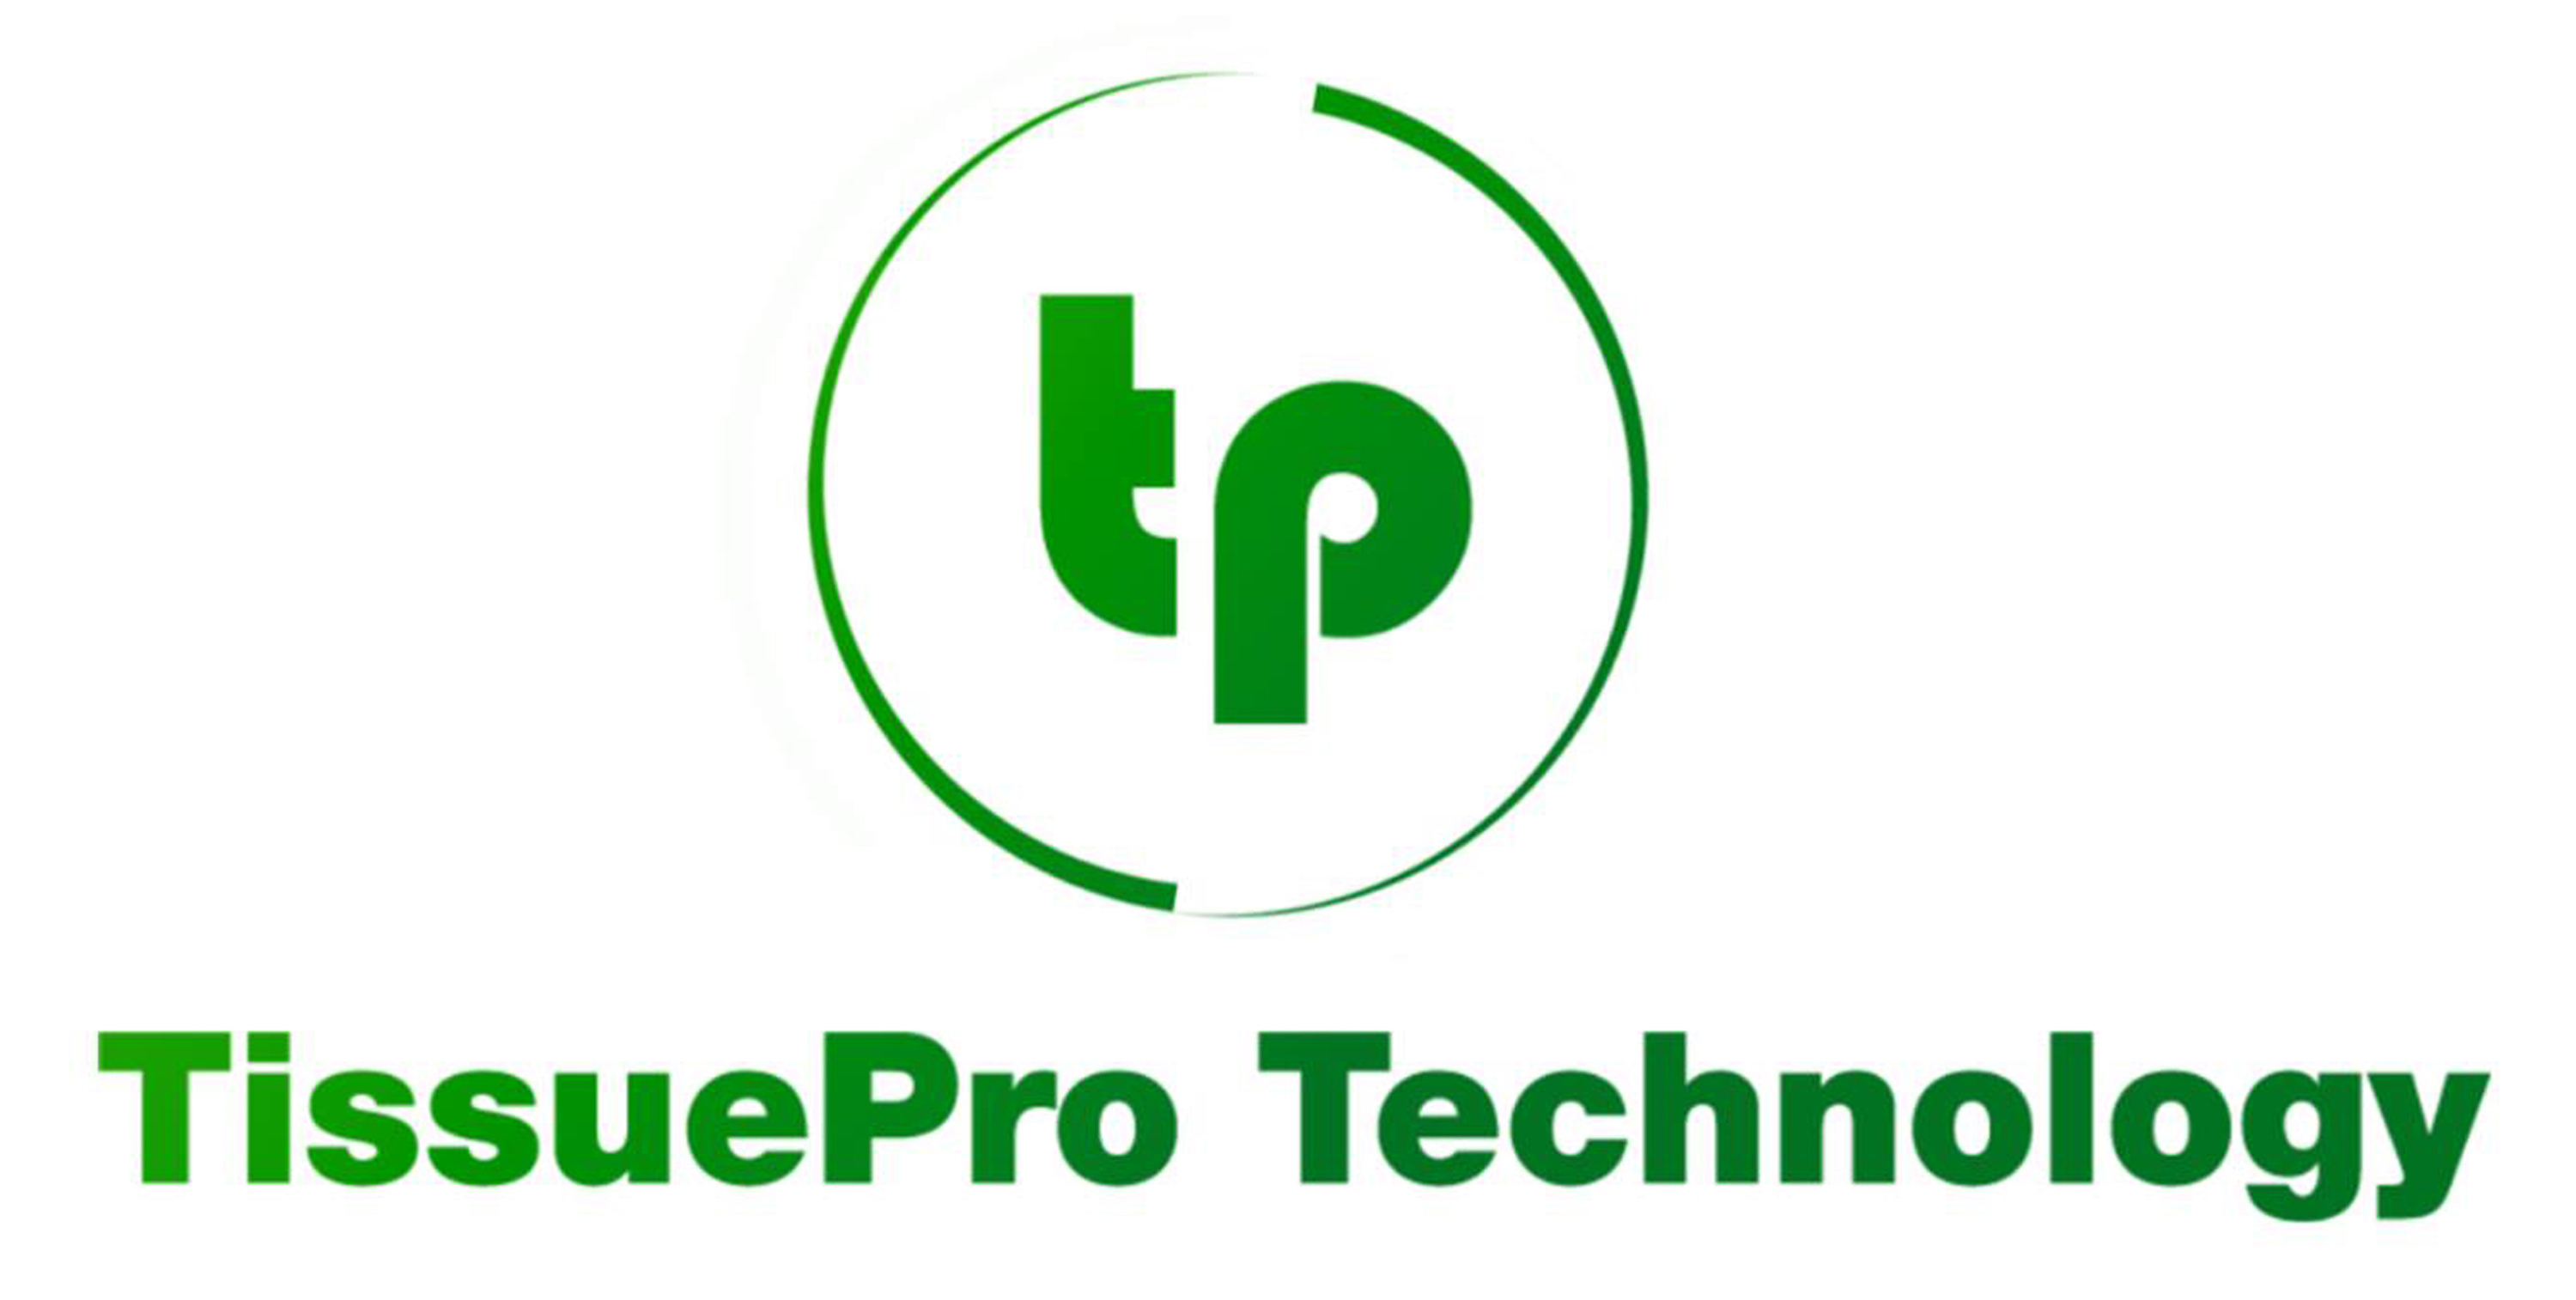 TissuePro Technology